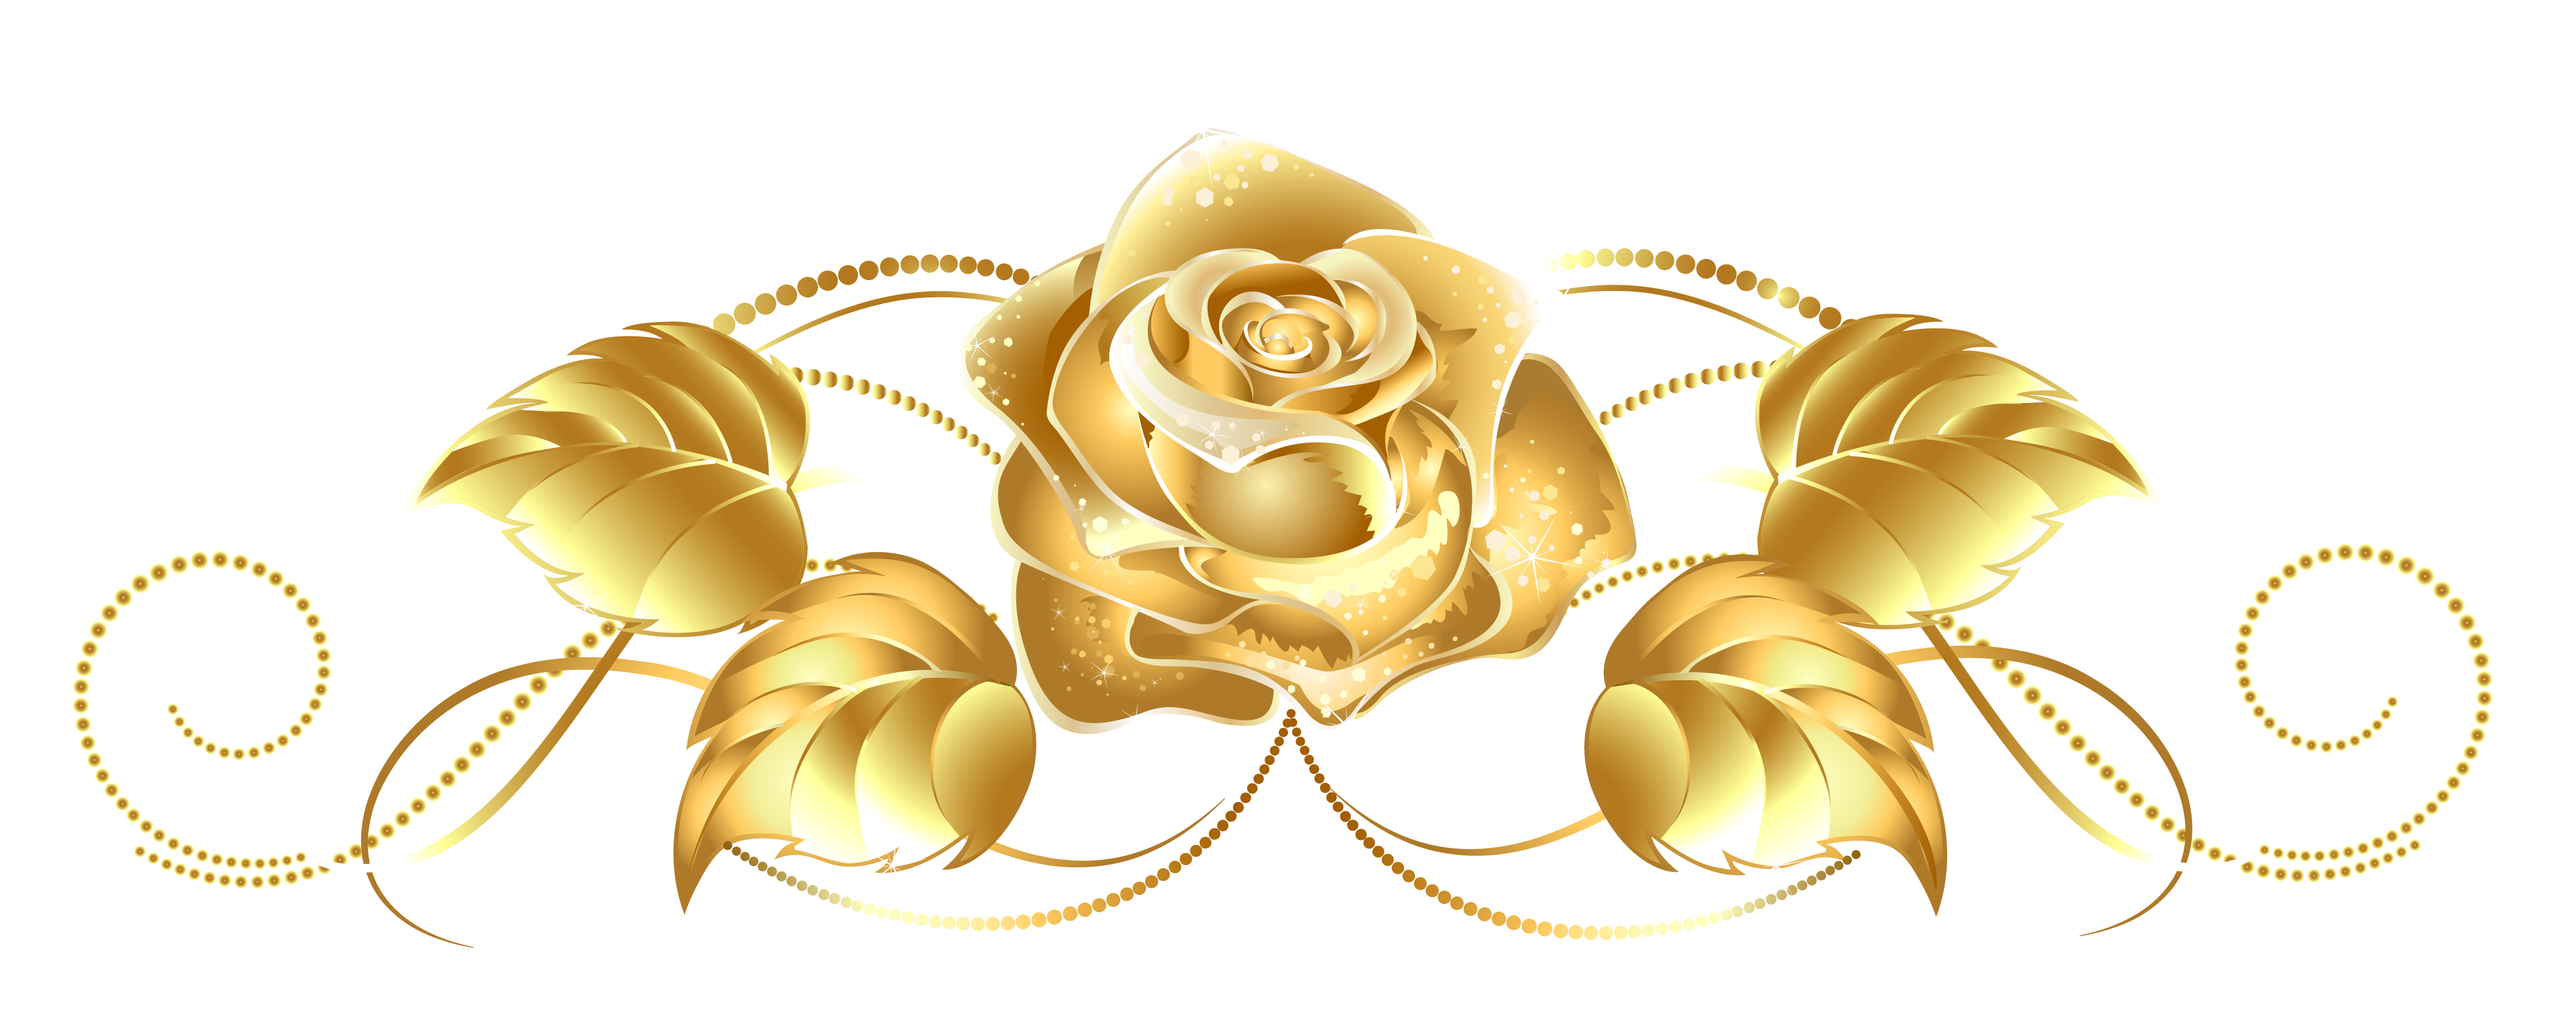 Golden Rose Free PNG Image